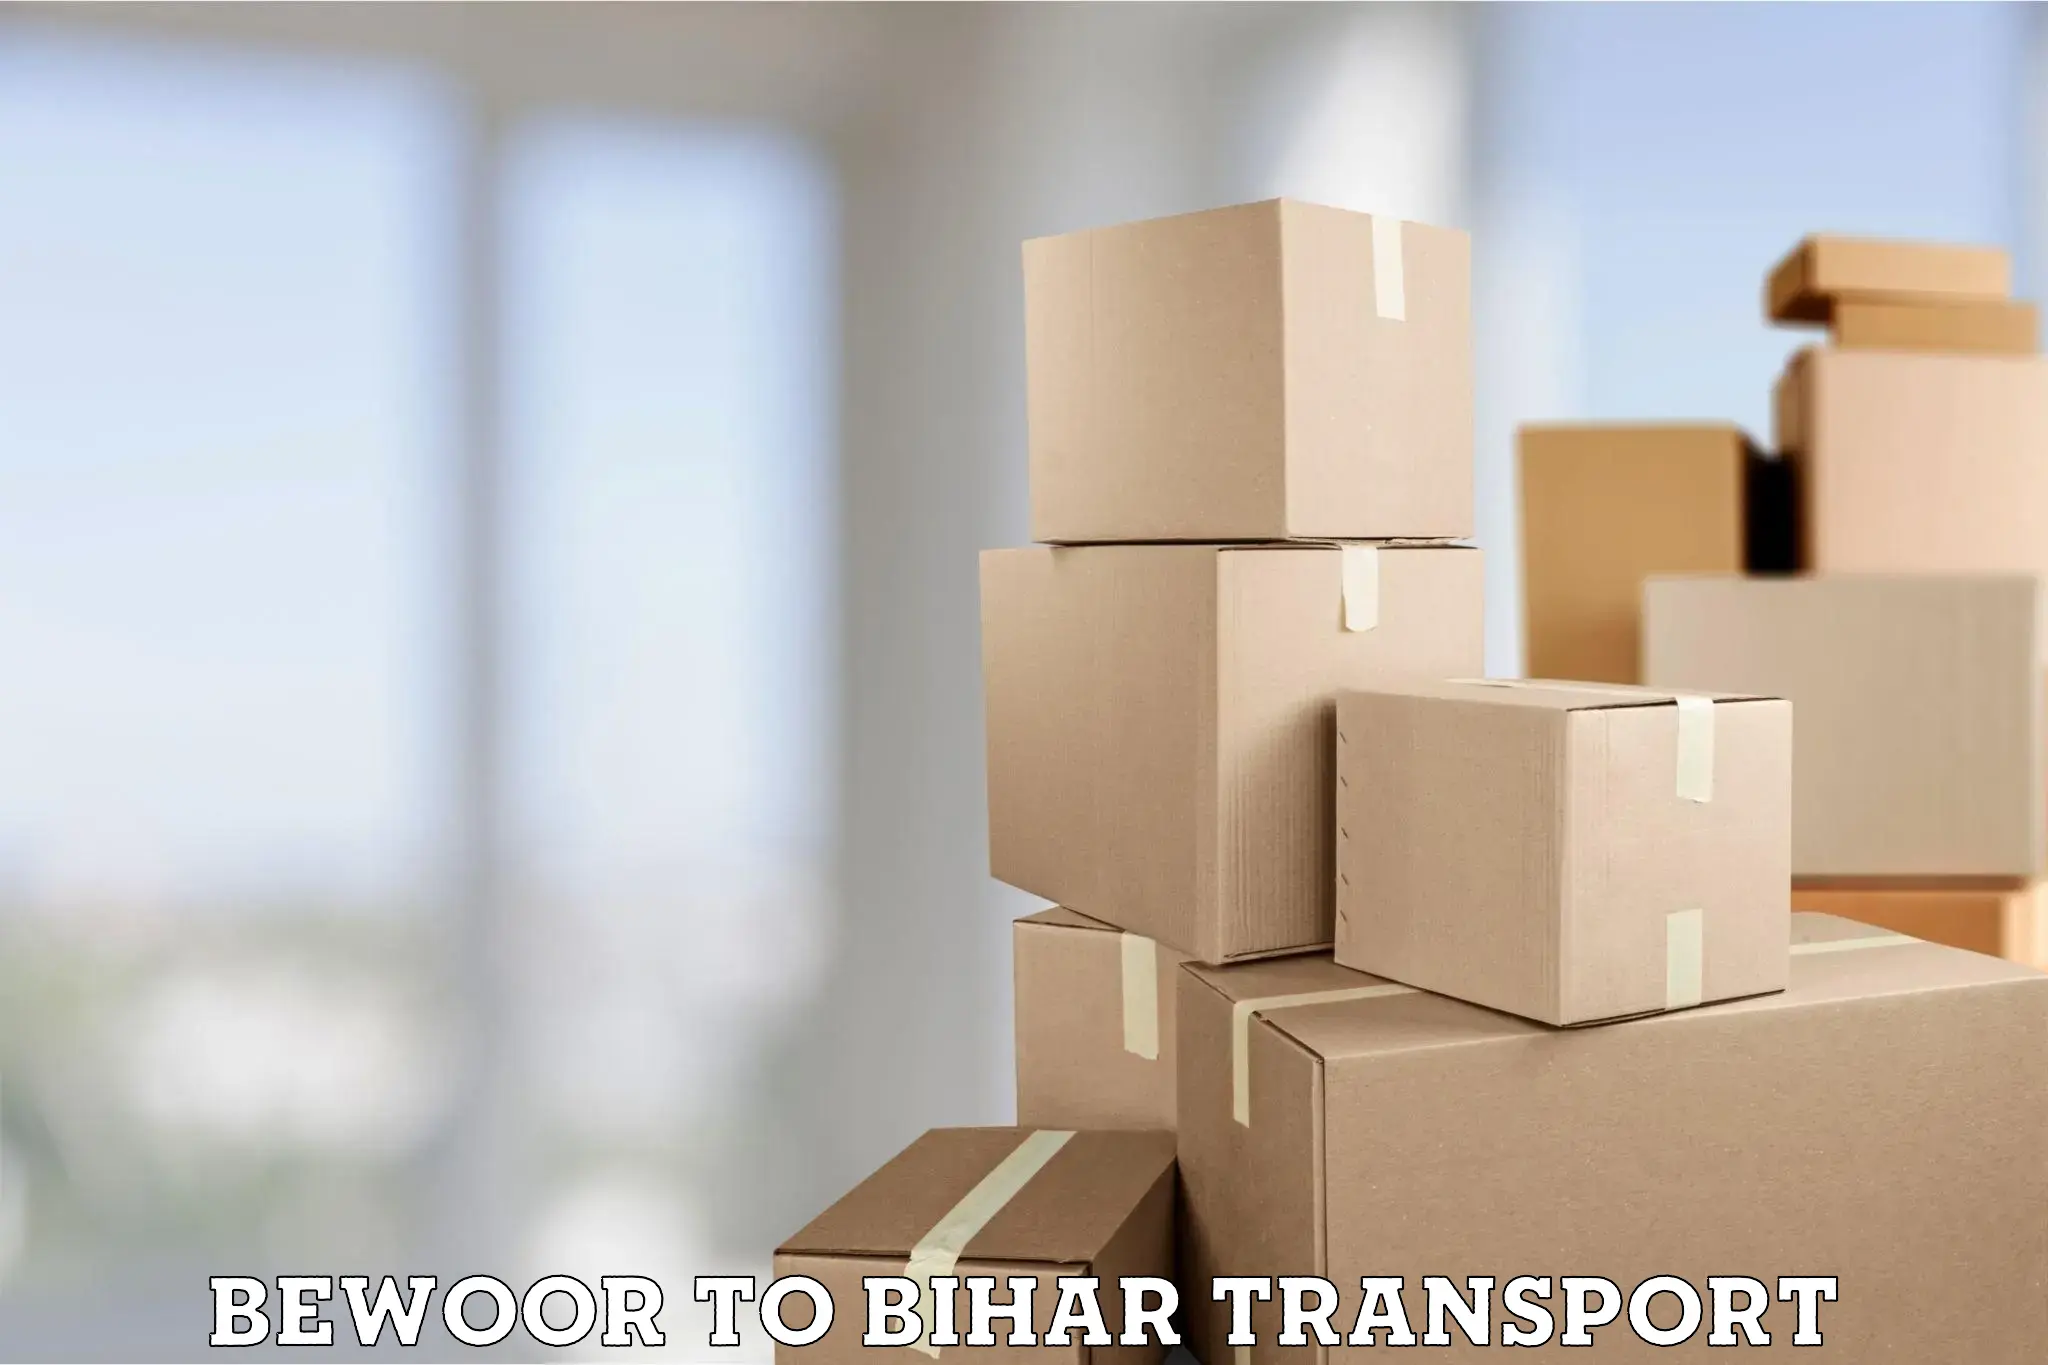 Furniture transport service Bewoor to Bikramganj